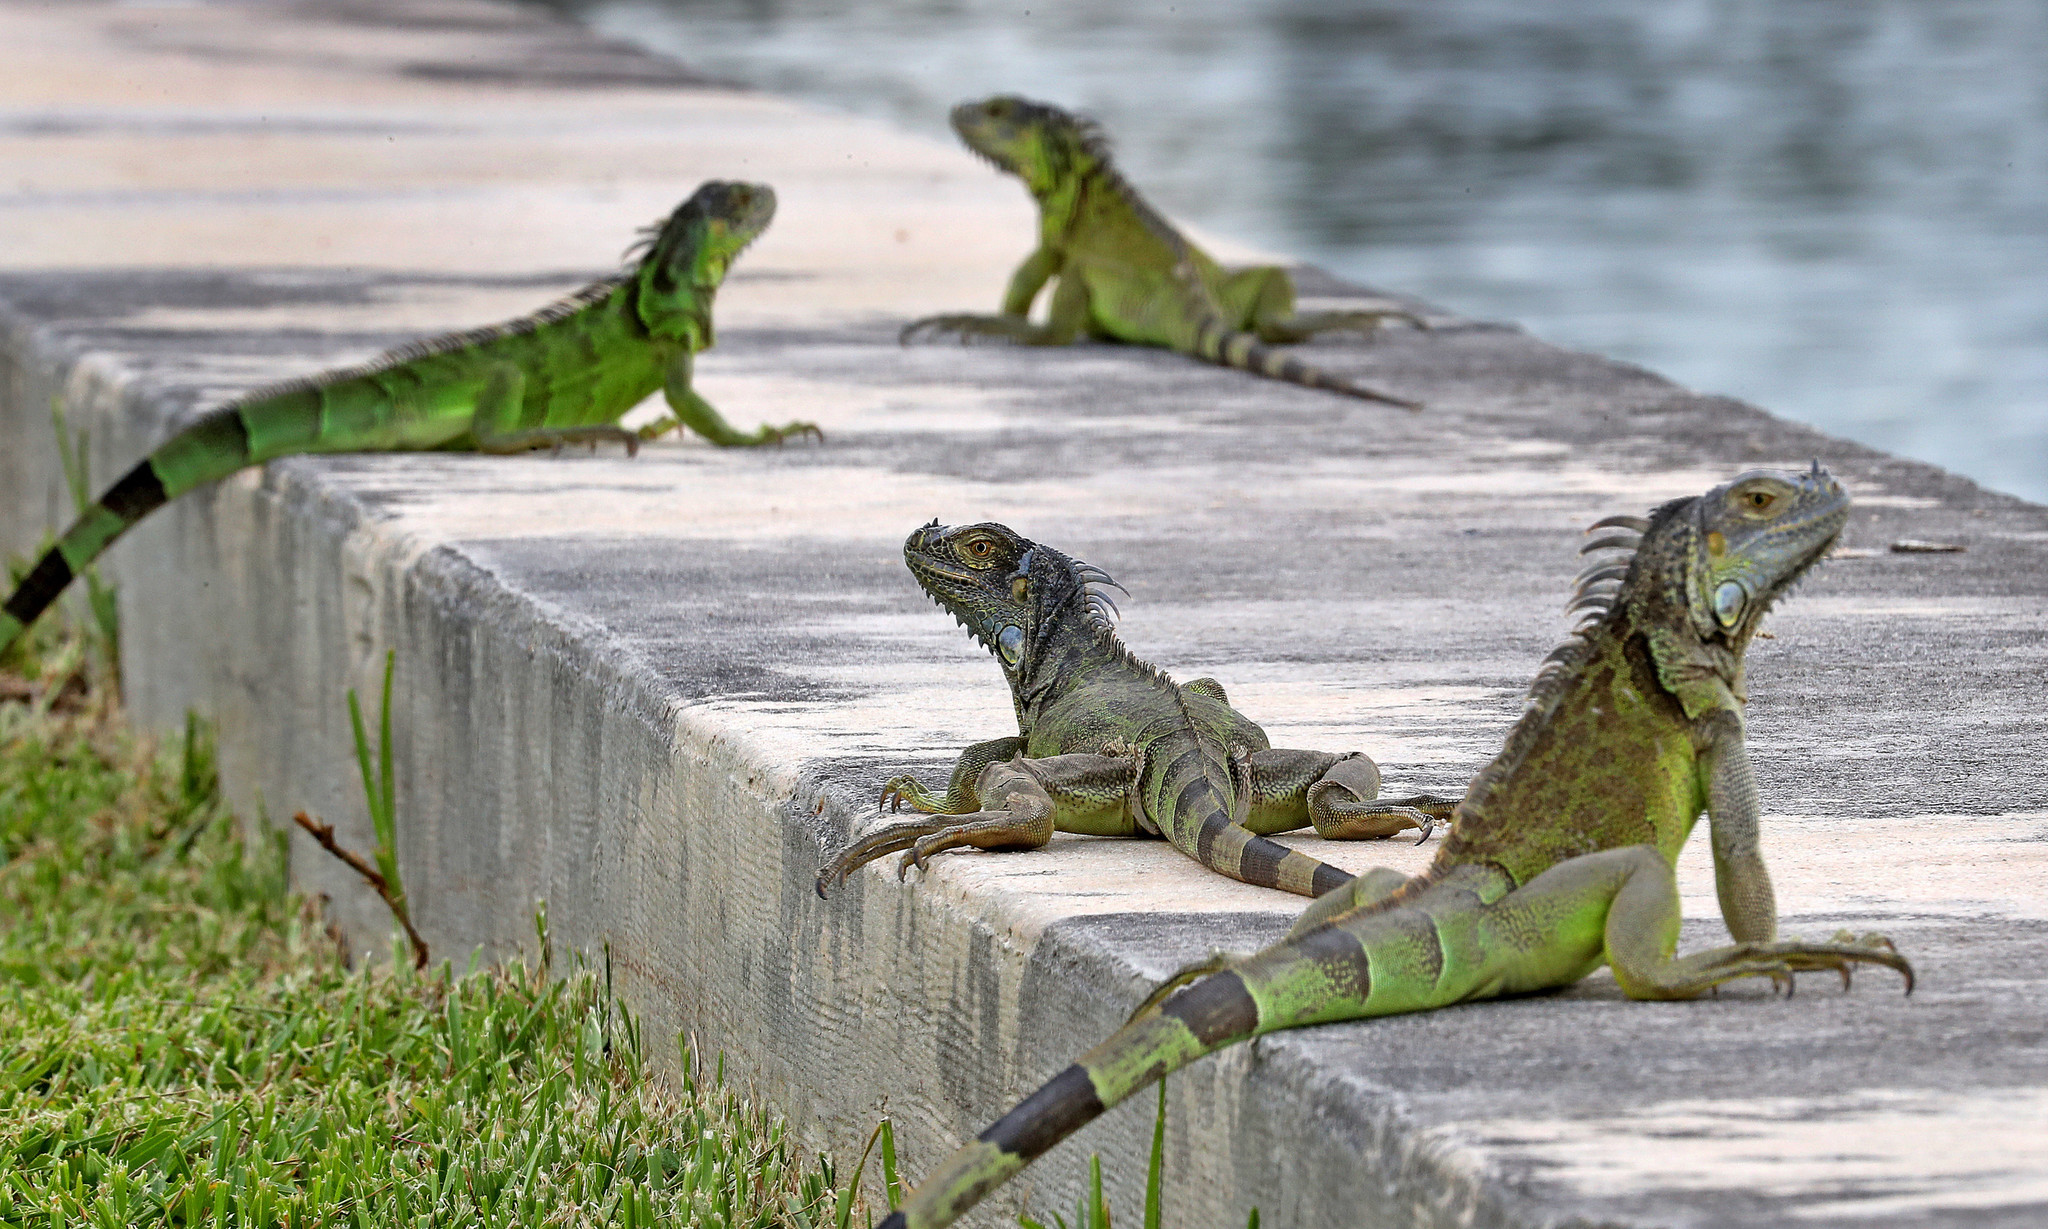 Invasão de iguanas no Sul da Flórida preocupa moradores (Foto: SunSentinel)